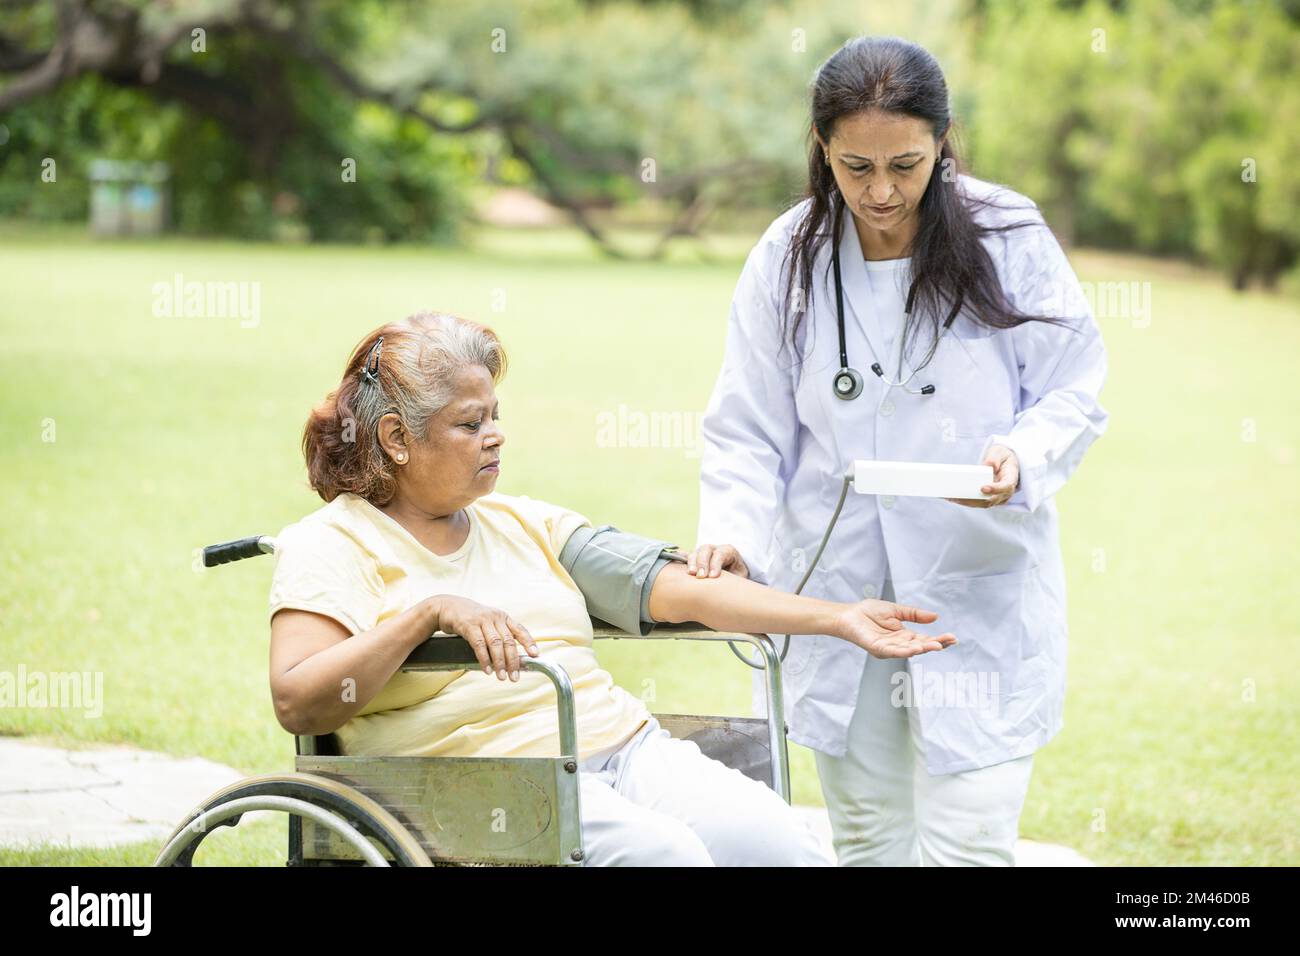 Il medico indiano controlla la pressione sanguigna della paziente anziana in una sedia a rotelle all'aperto nel parco. Foto Stock